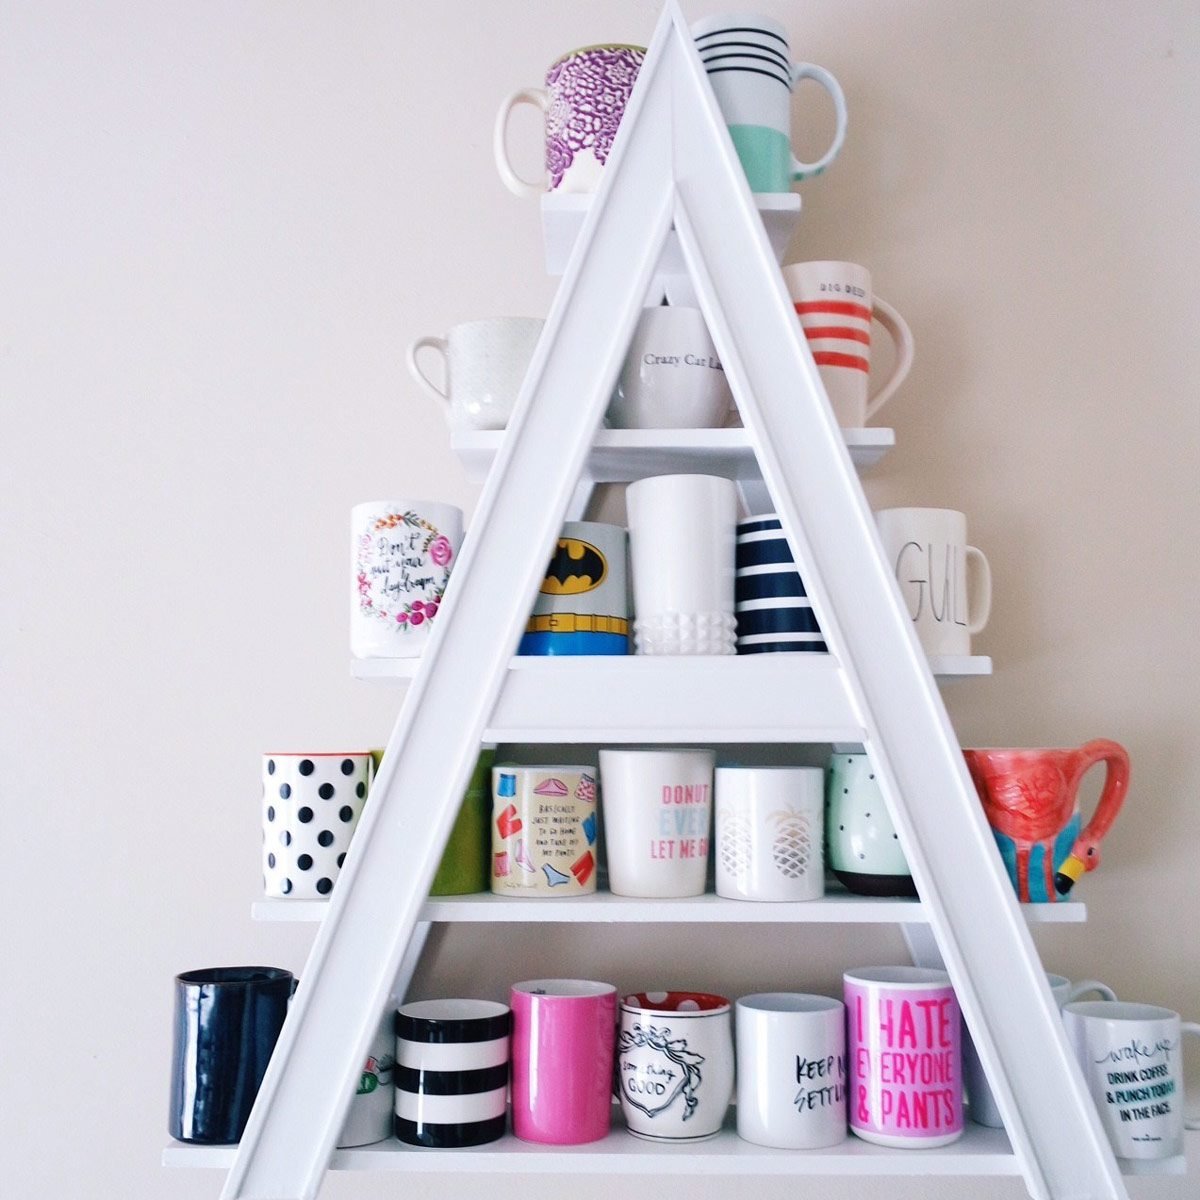 10 Creative DIY Coffee Mug Storage Ideas